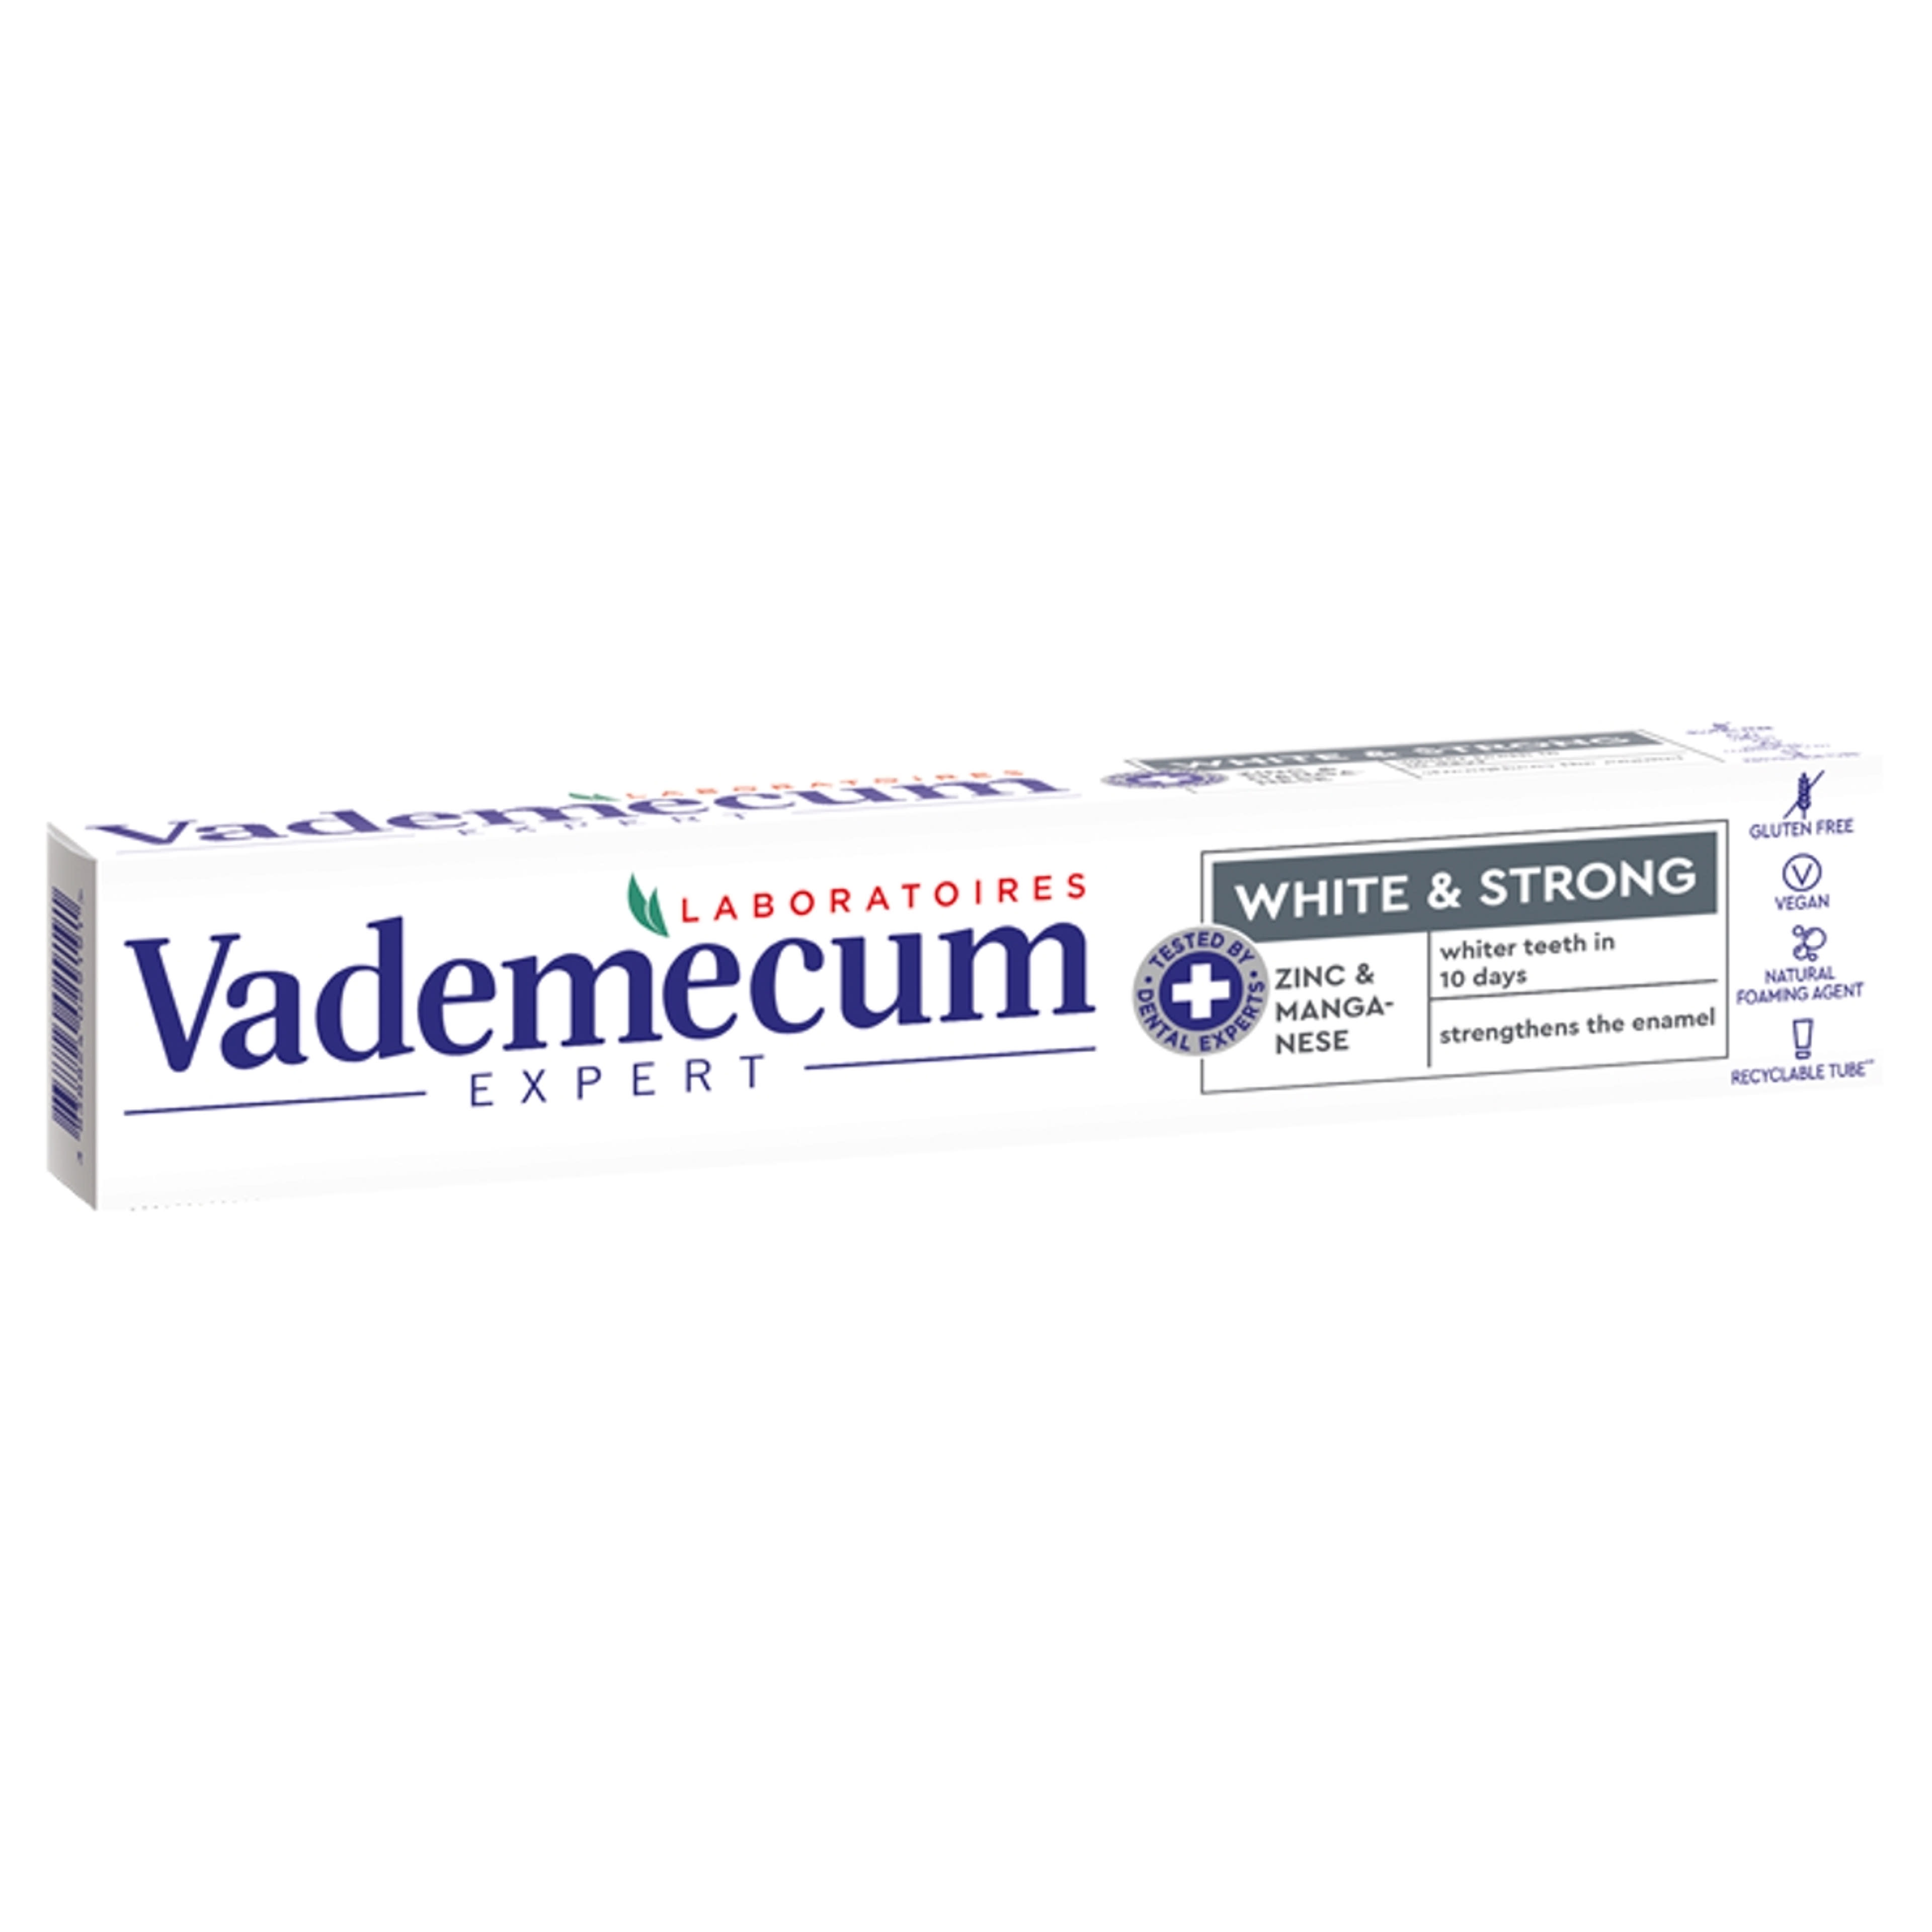 Vademecum Expert White & Strong fogkrém - 75 ml